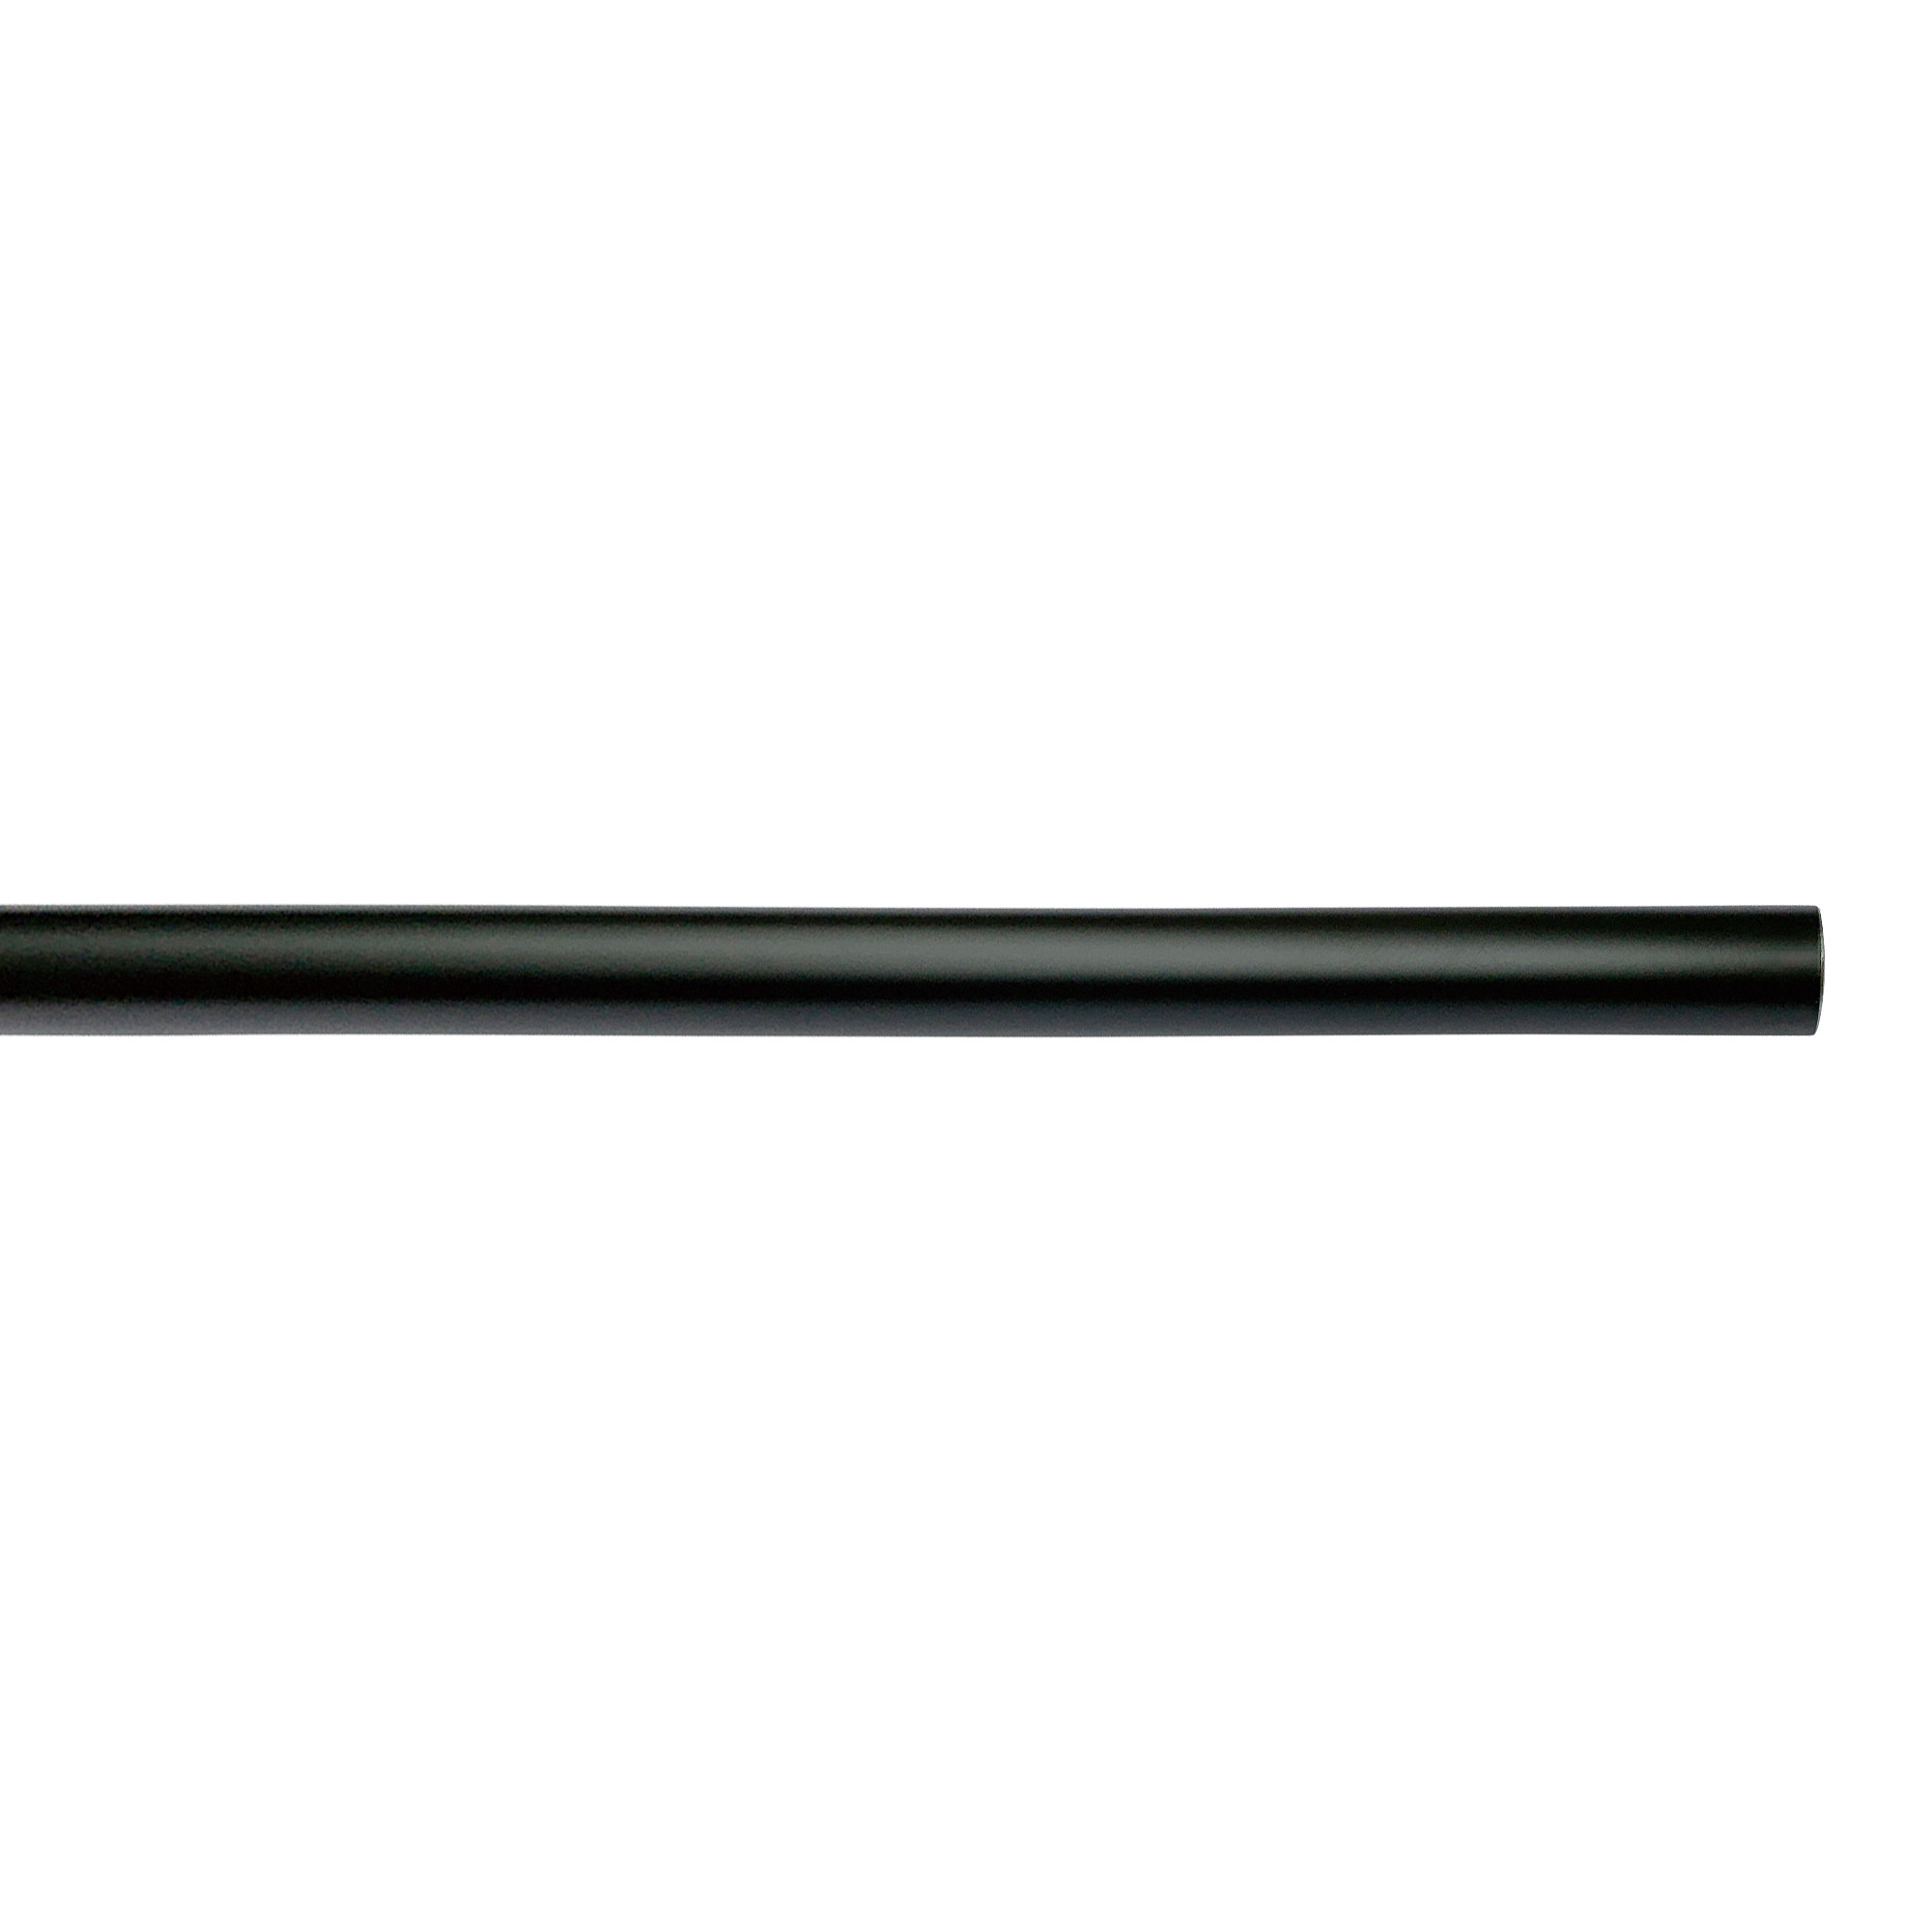 アイアンハンガーパイプ F型-天井吊タイプ H500 ブラック PS-HB008-73-G141 水平パイプは3サイズから2本、それぞれお好きな長さを選択可能です